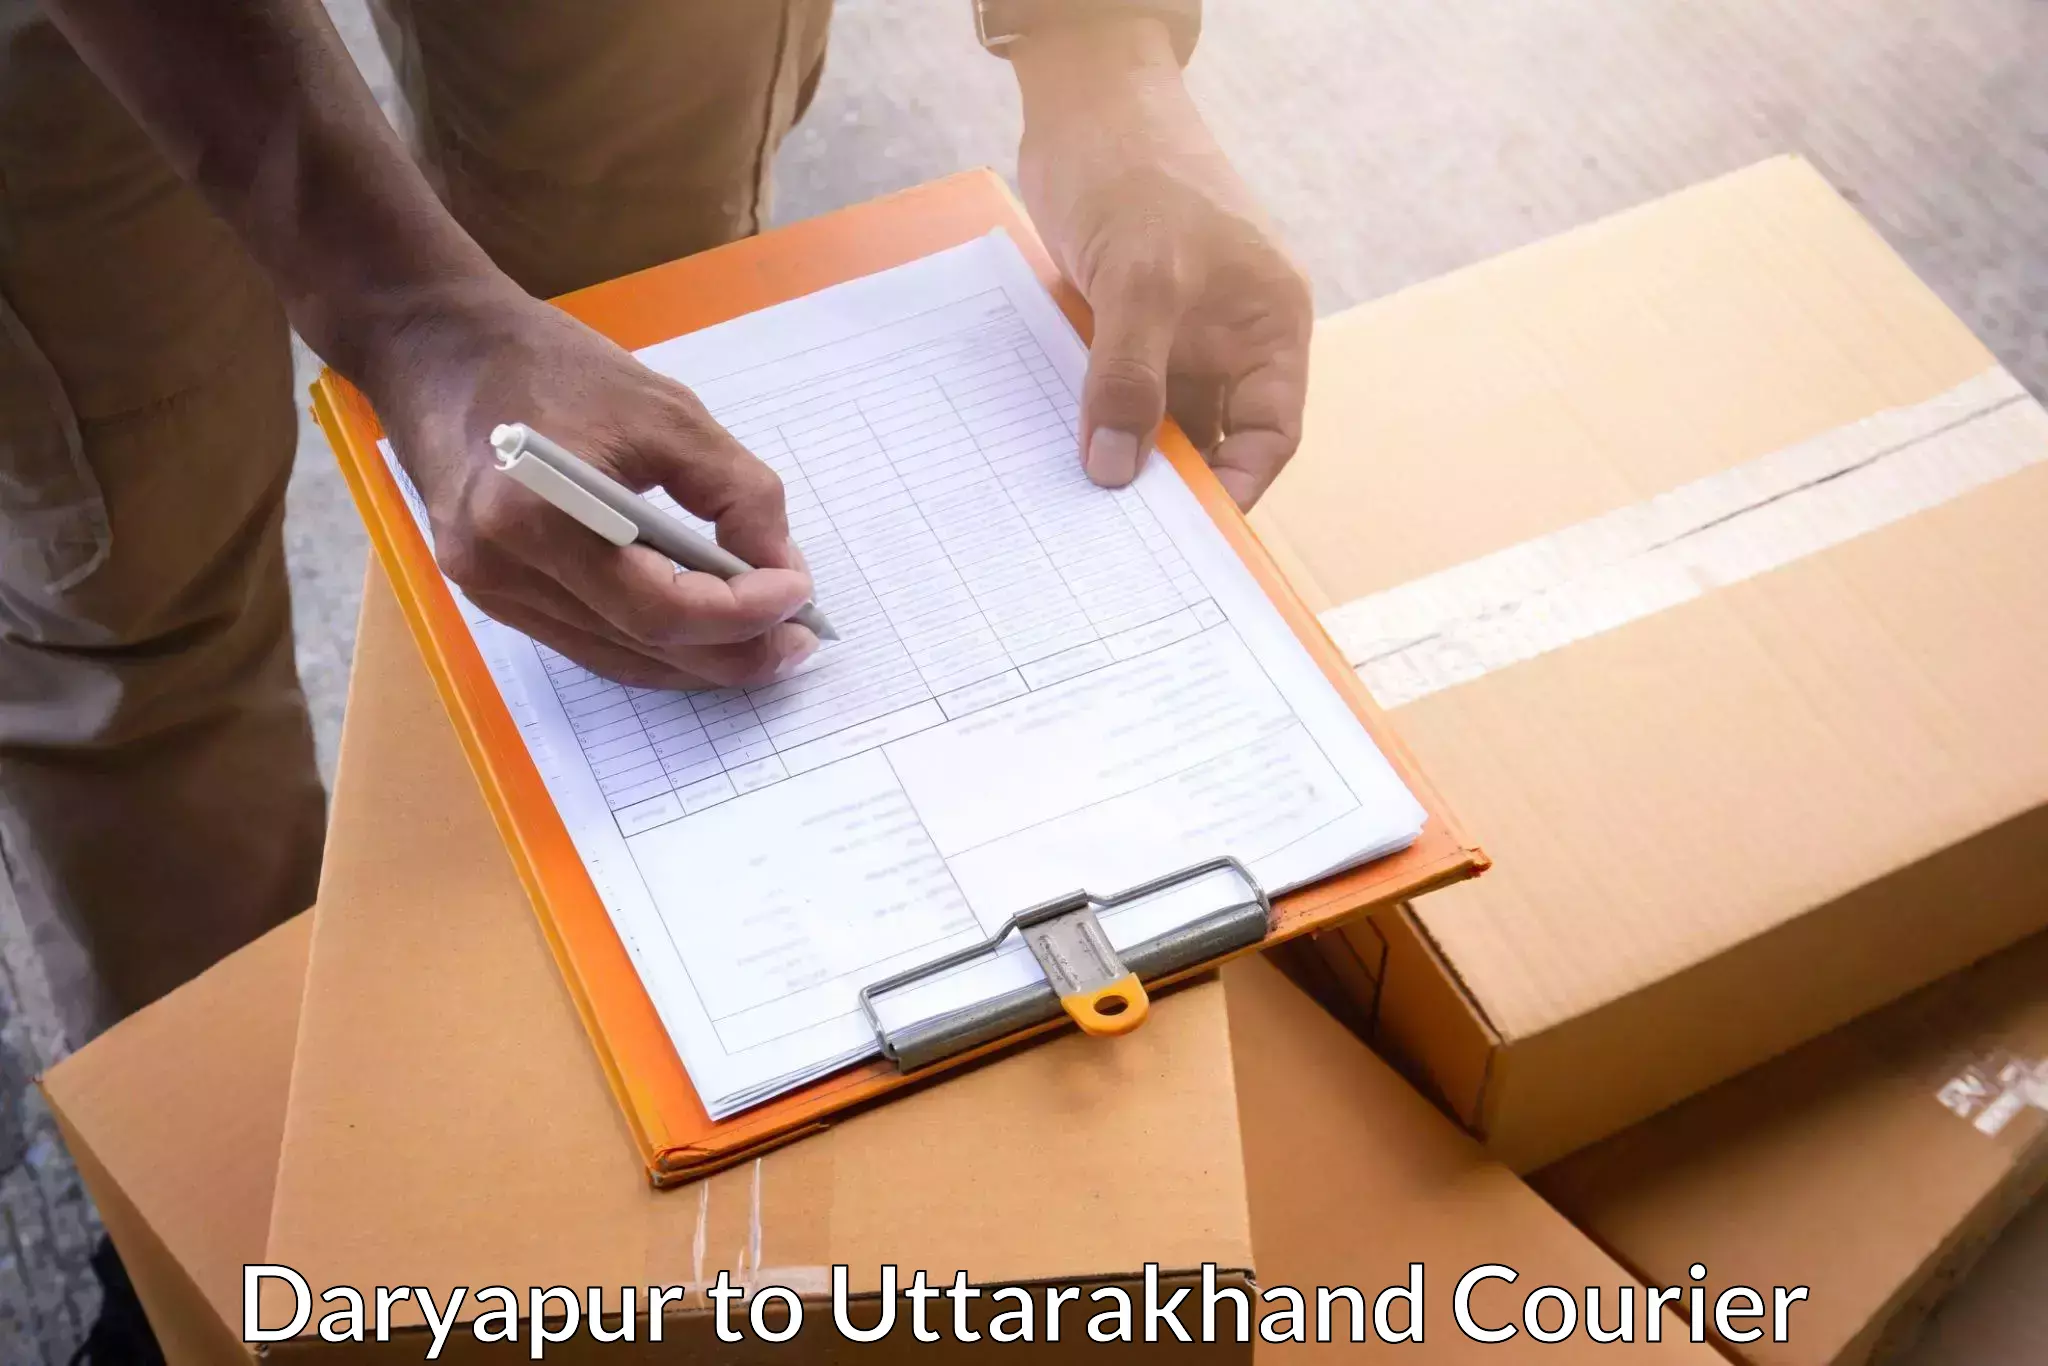 Tailored shipping plans Daryapur to Gopeshwar